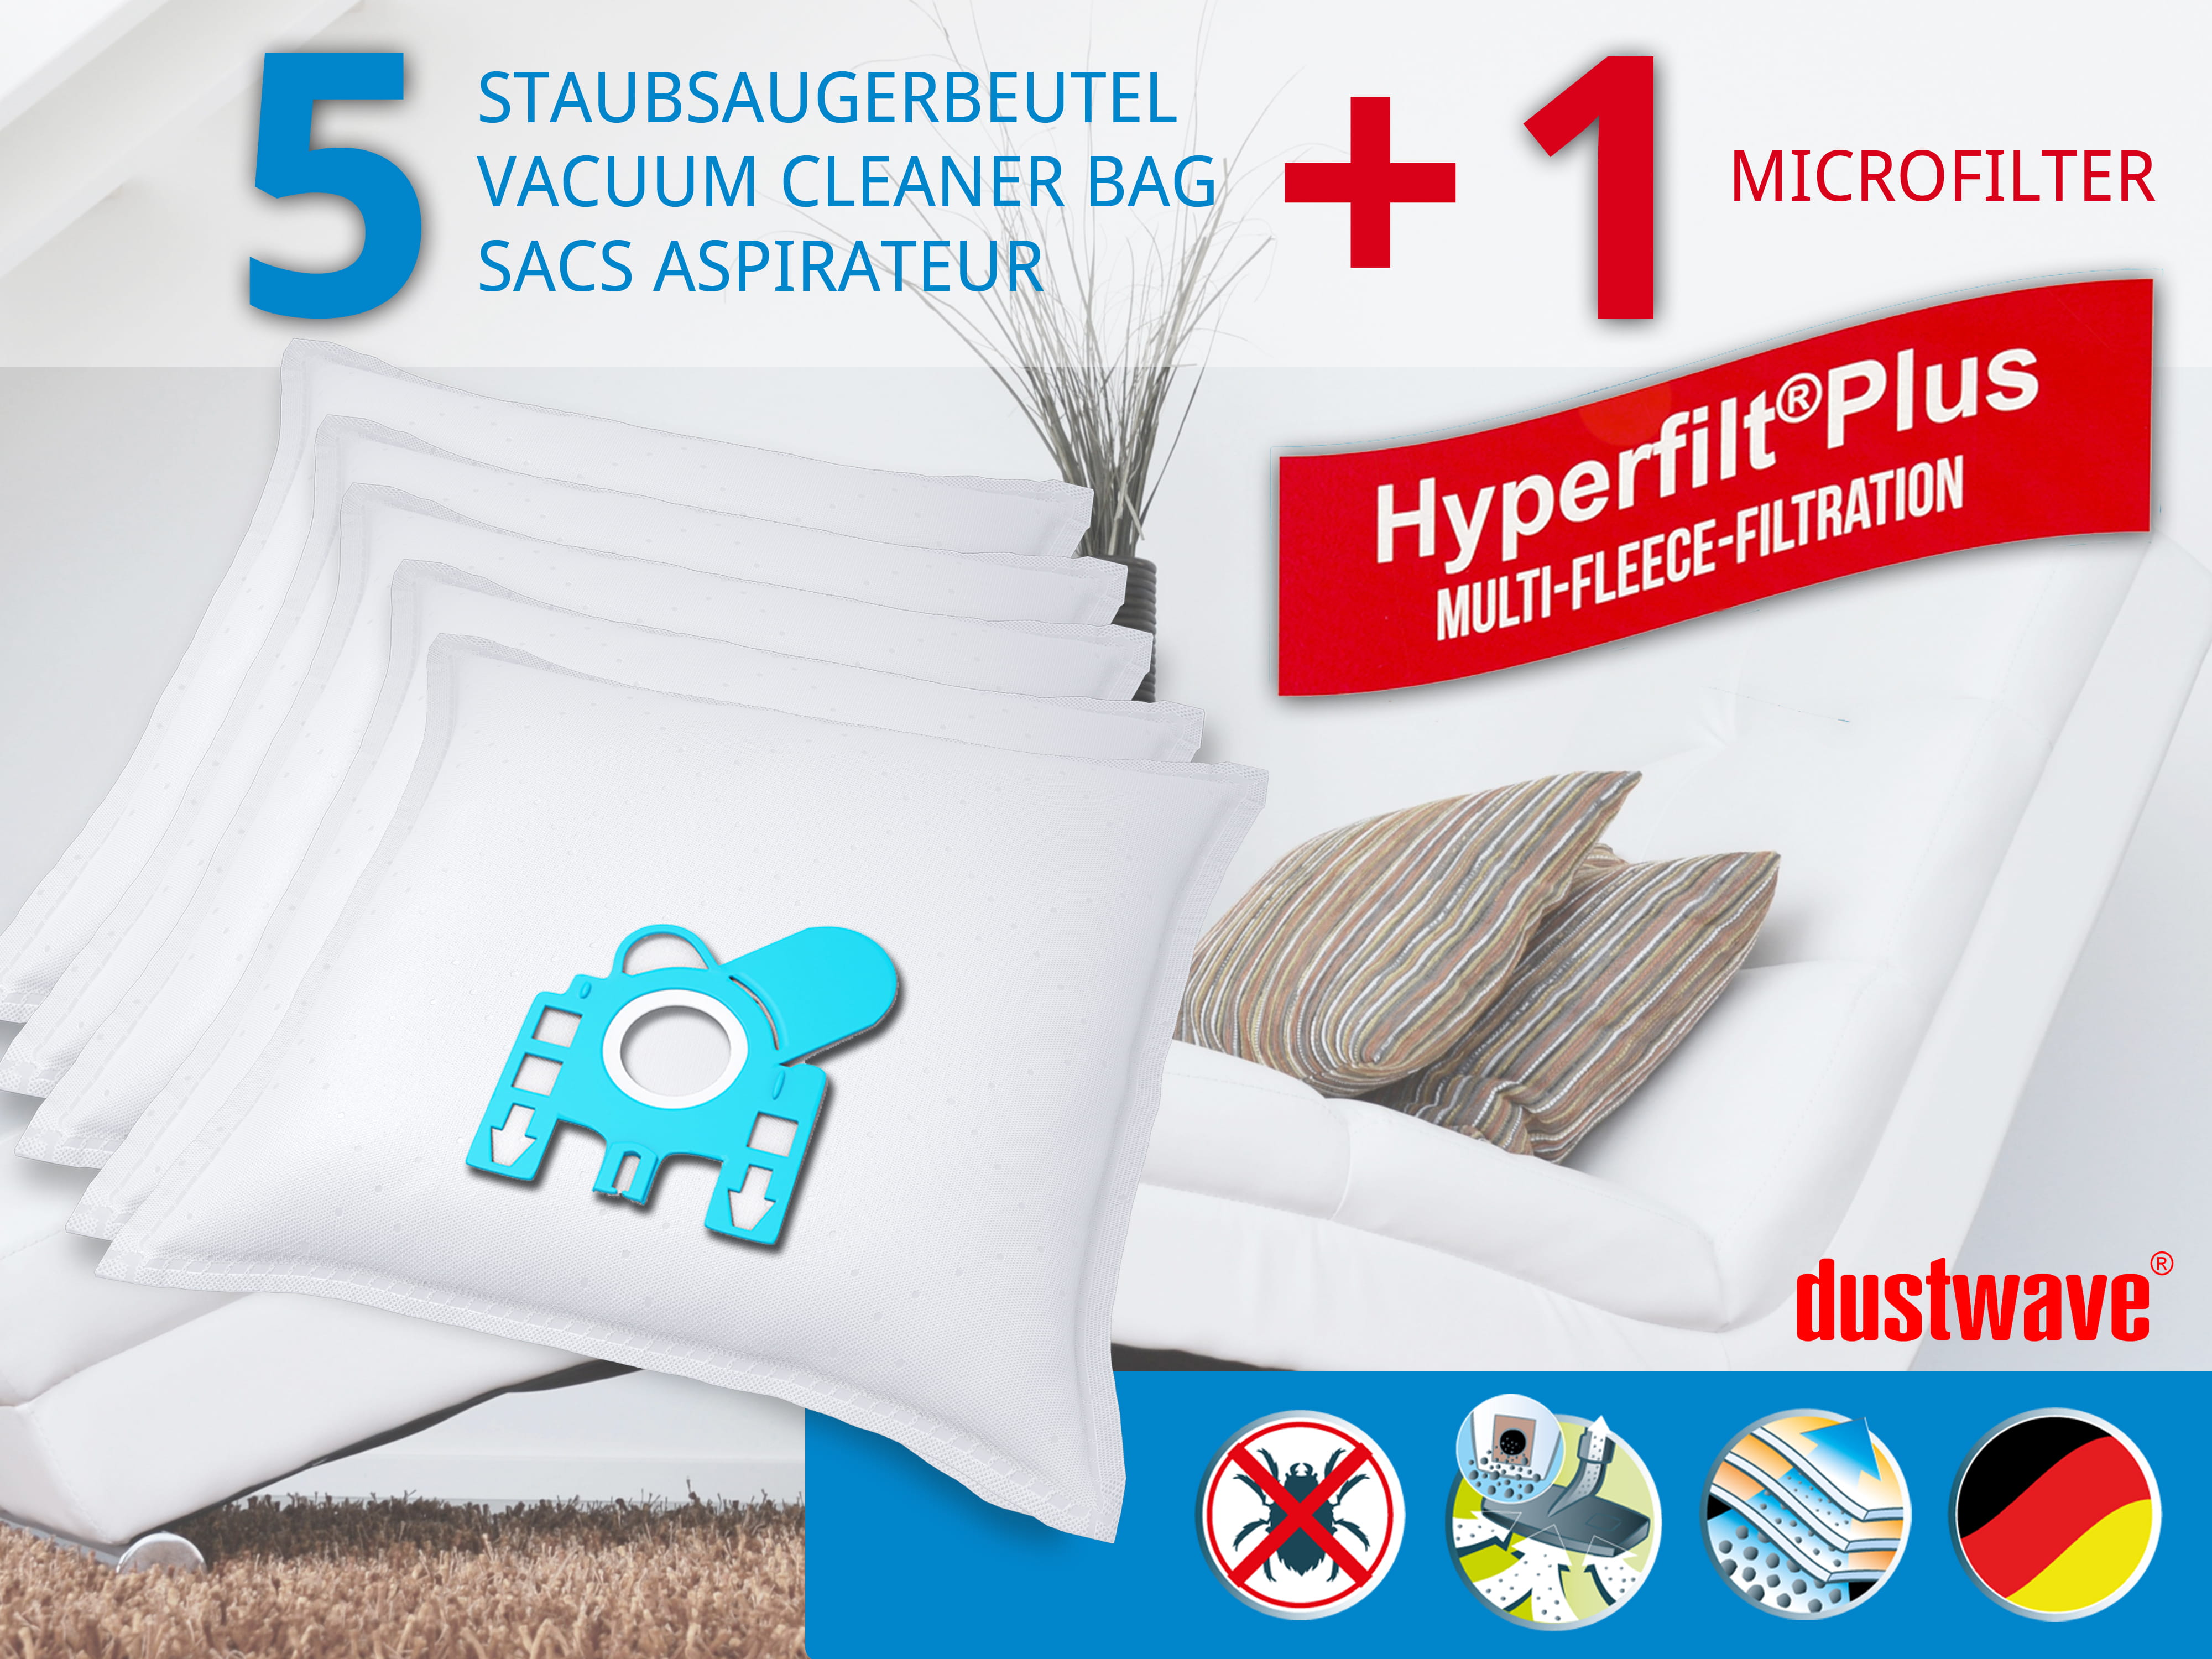 Dustwave® 5 Staubsaugerbeutel für Miele Xtra Care - hocheffizient, mehrlagiges Mikrovlies mit Hygieneverschluss - Made in Germany